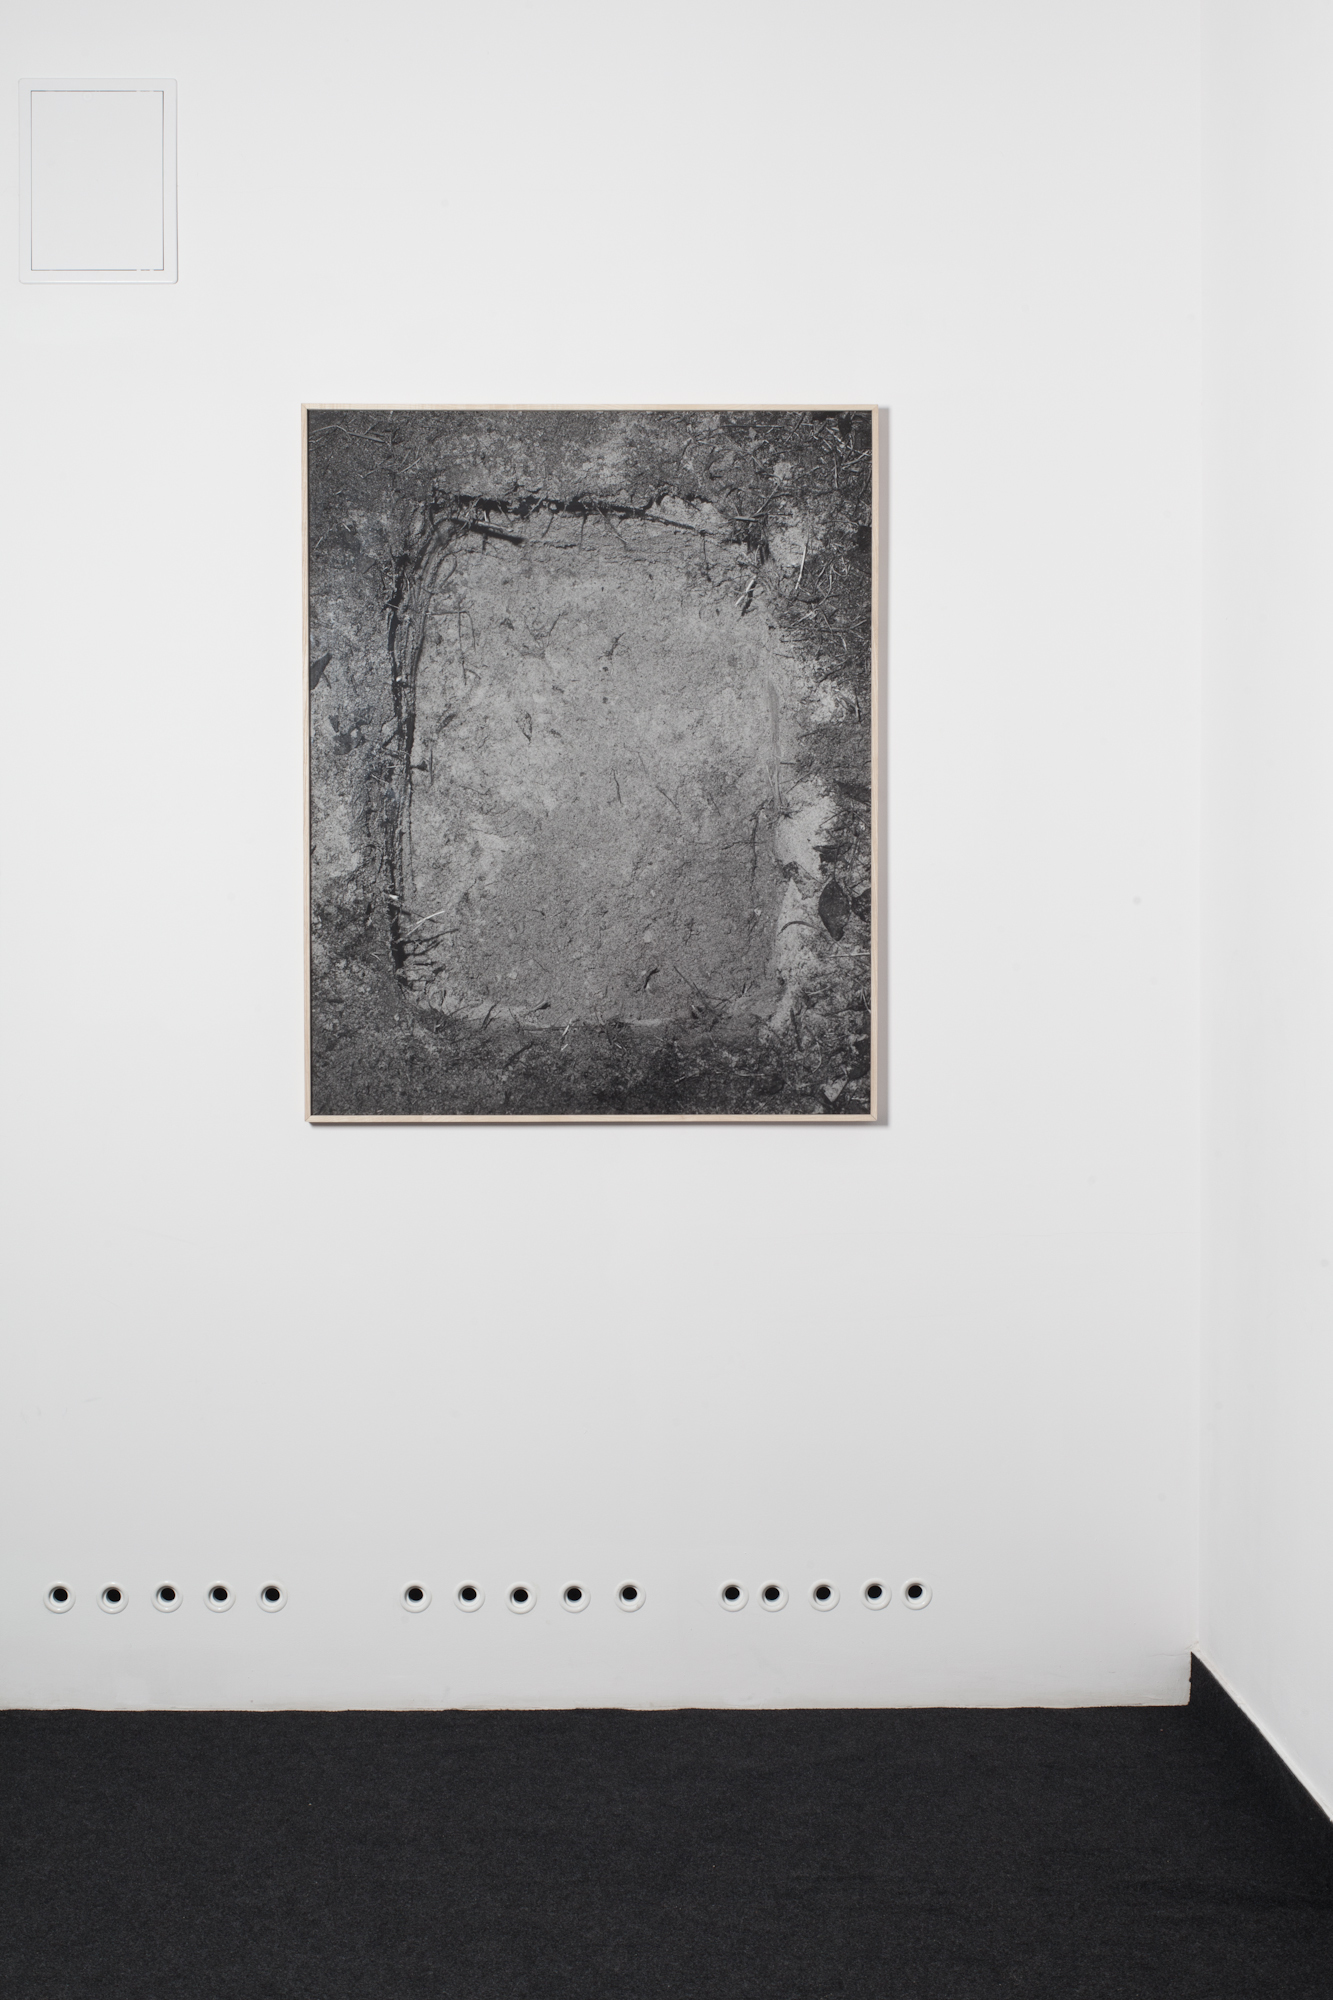 "dziura w ziemi", 2013-14, 120x96 cm